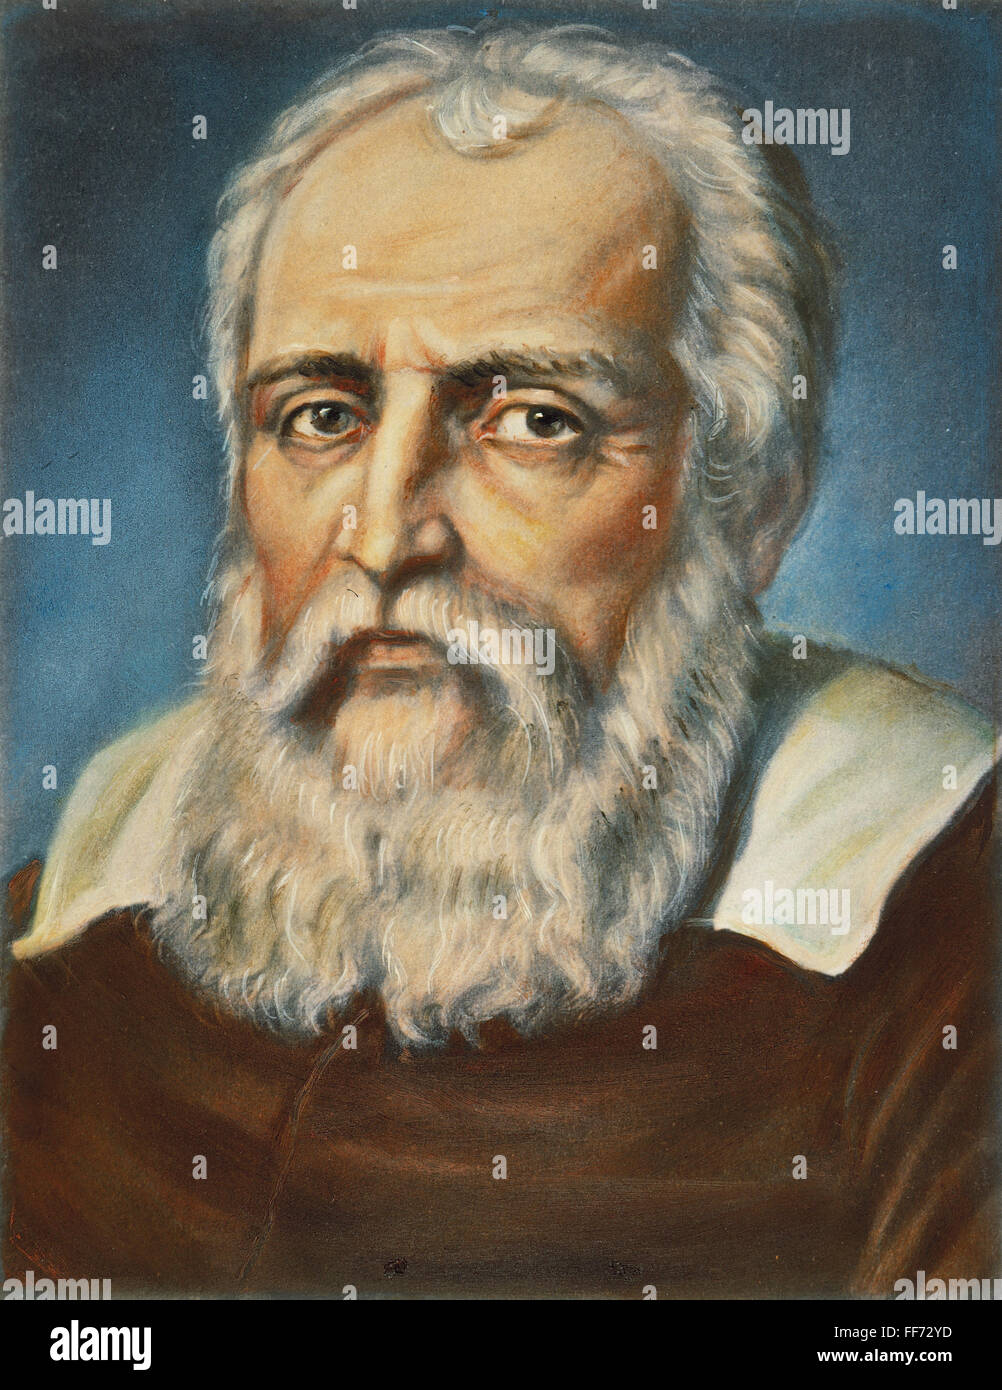 GALILEO GALILEI (1564-1642). /NItalian astronomo matematico e fisico. Ritratto da un artista sconosciuto. Foto Stock